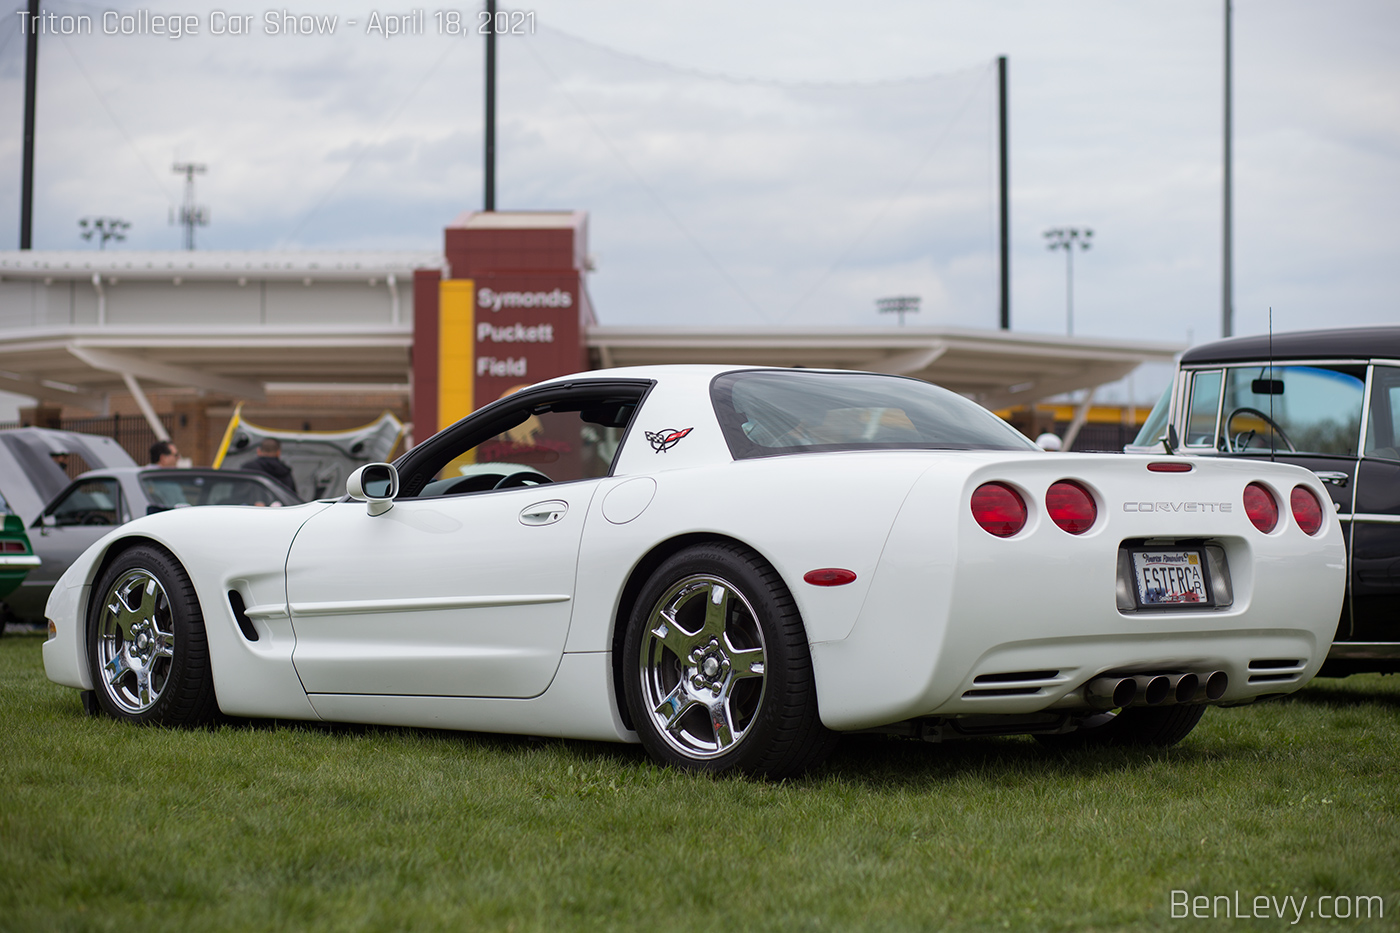 White C5 Corvette at Triton College Car Show